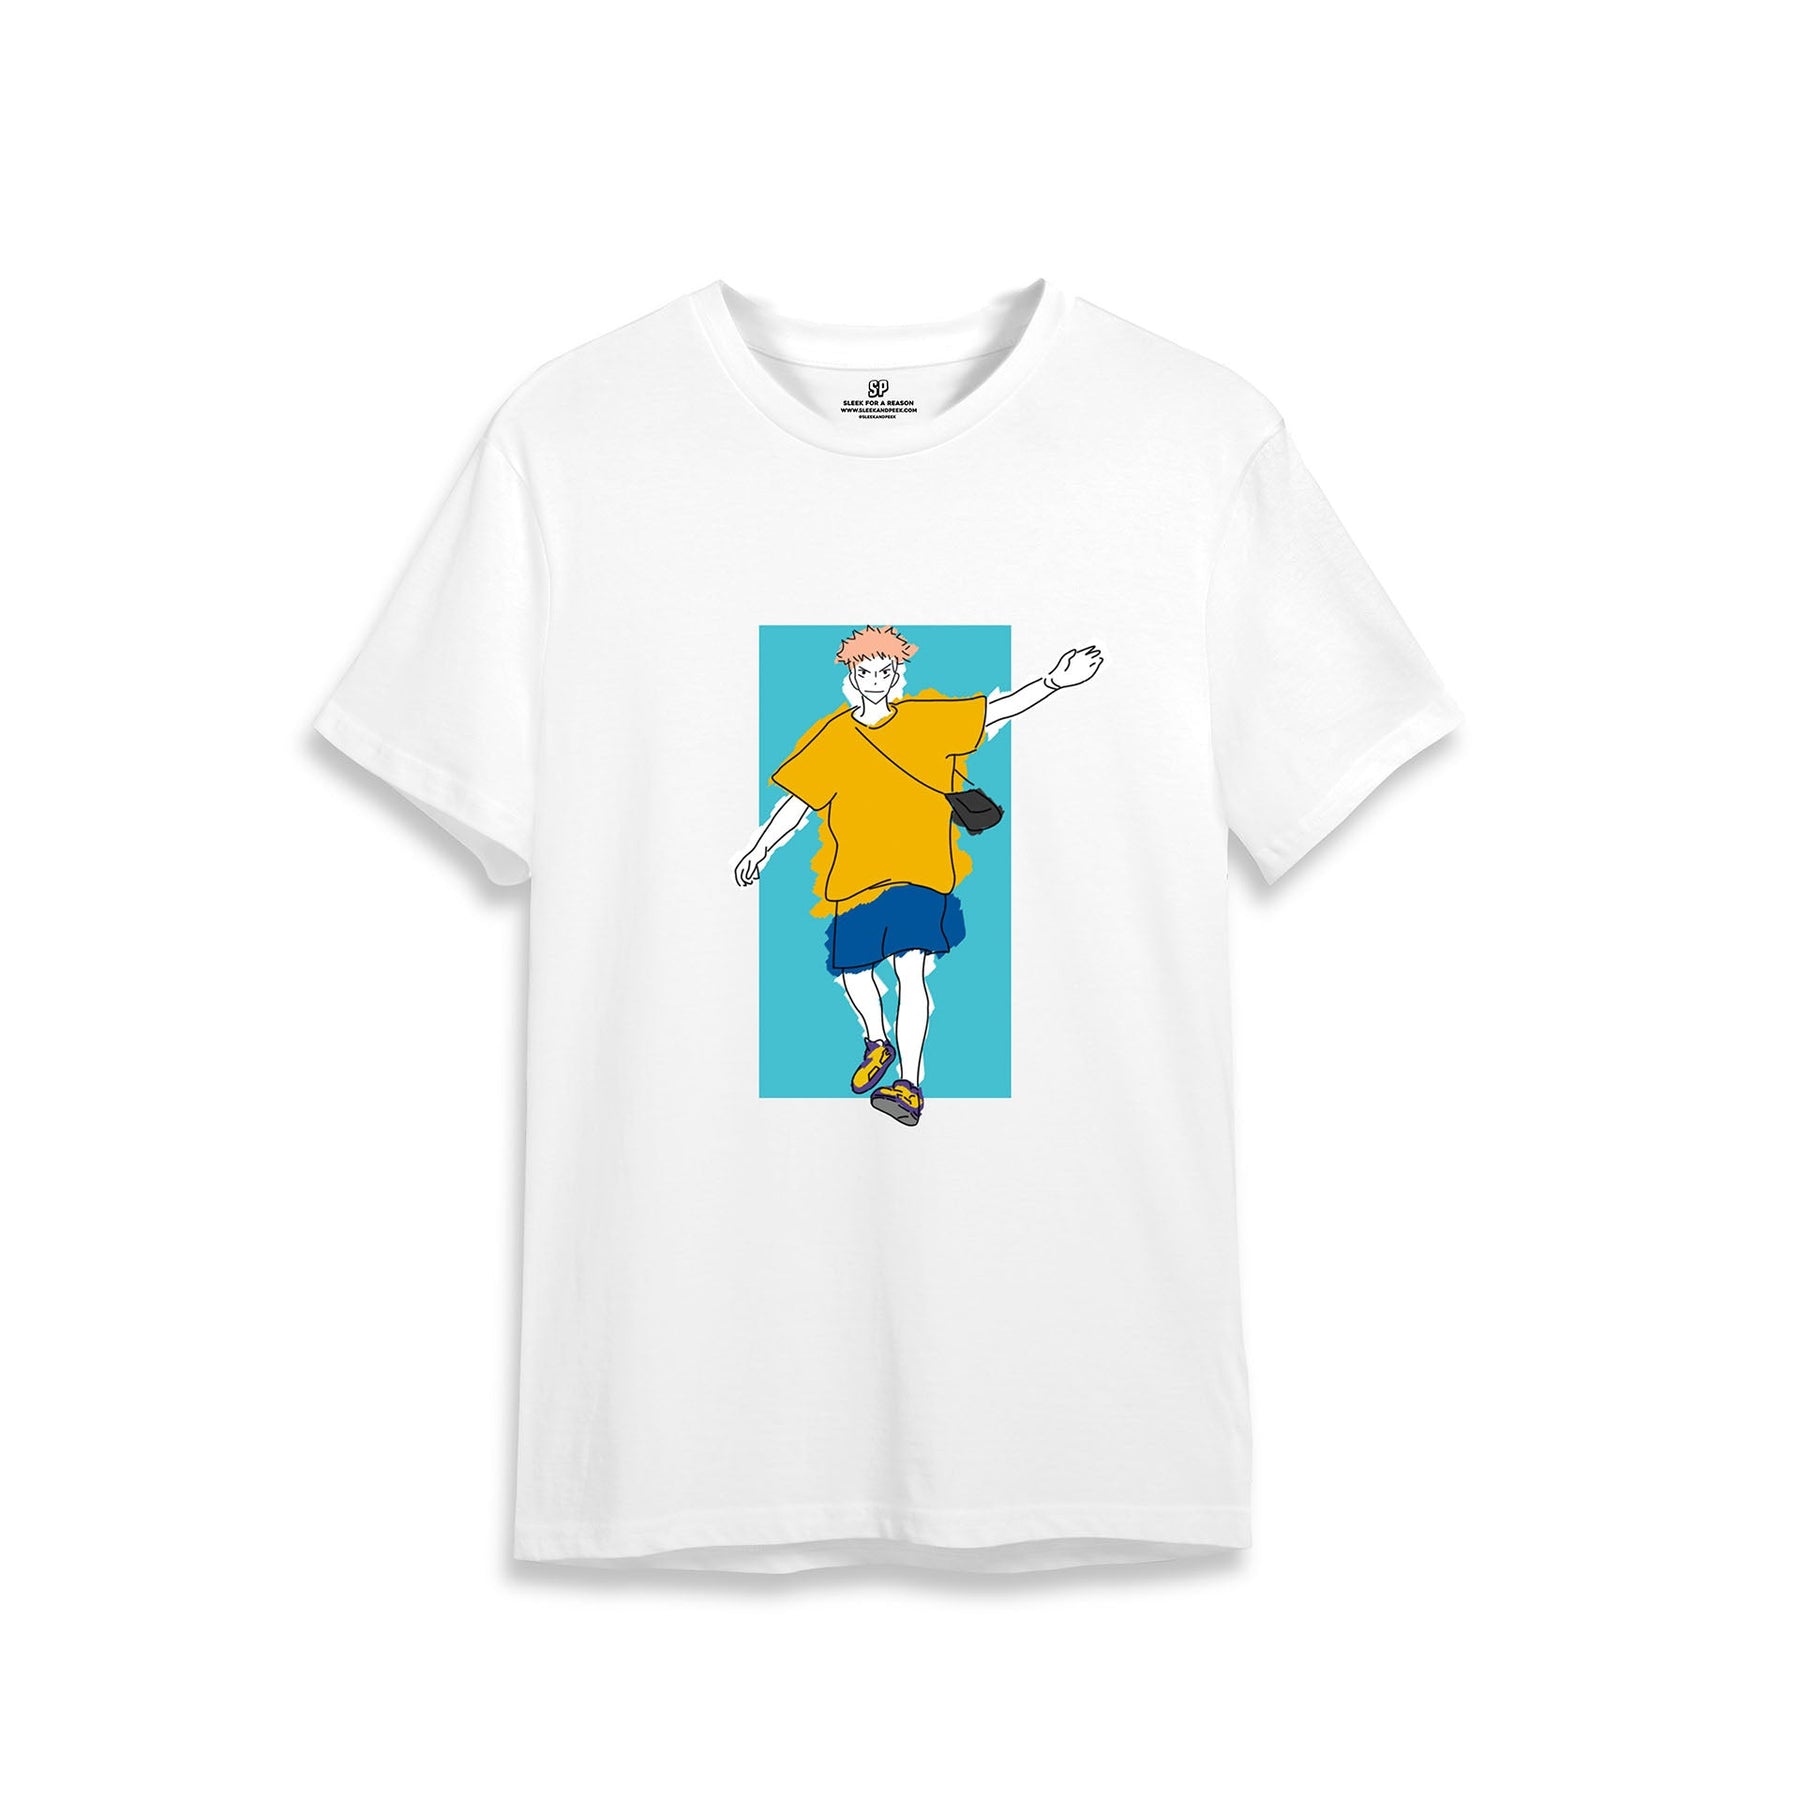 Gojo x Yuji Combo T-shirt